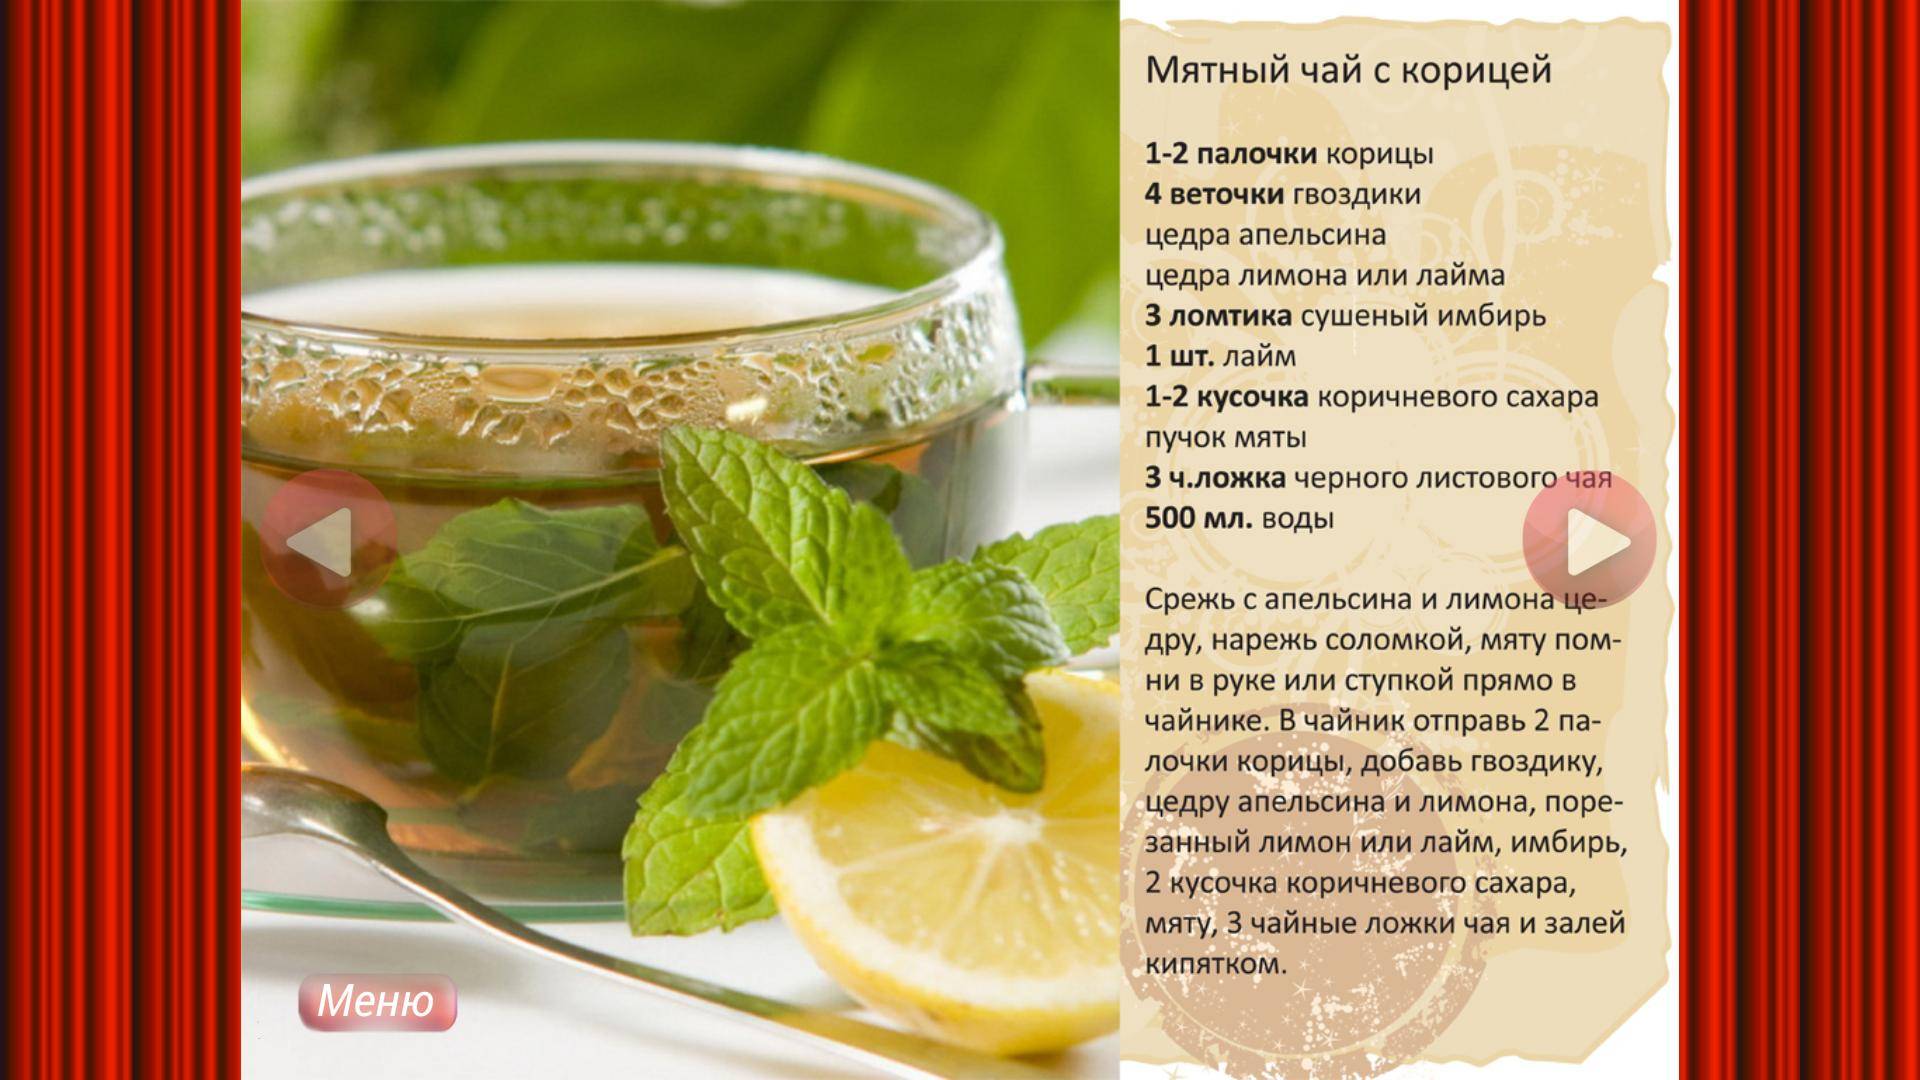 Чесночный чай: польза, рецепты приготовления